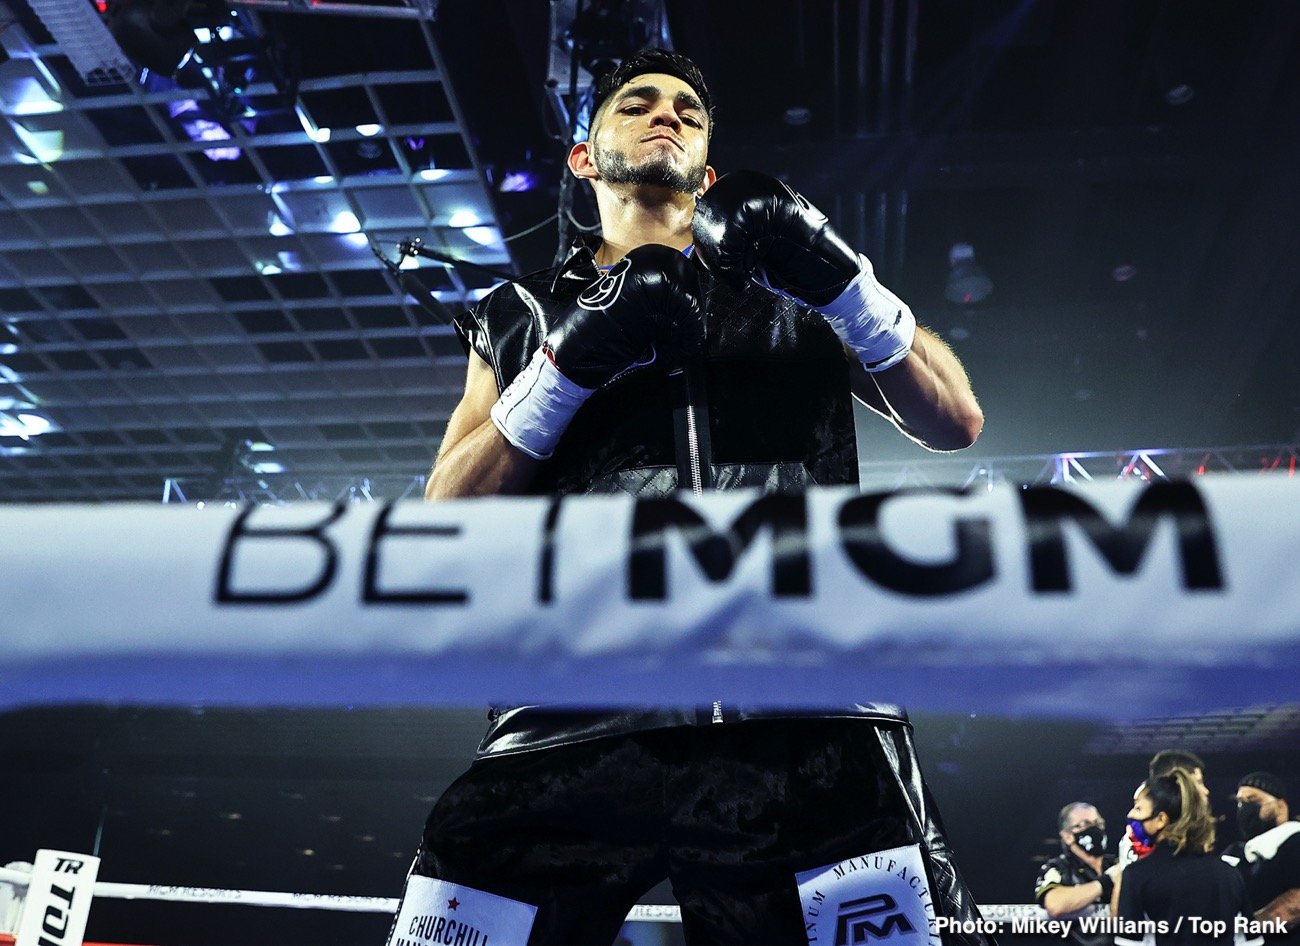 Vasiliy Lomachenko, - Boxing News 24, Teofimo Lopez boxing photo and news image